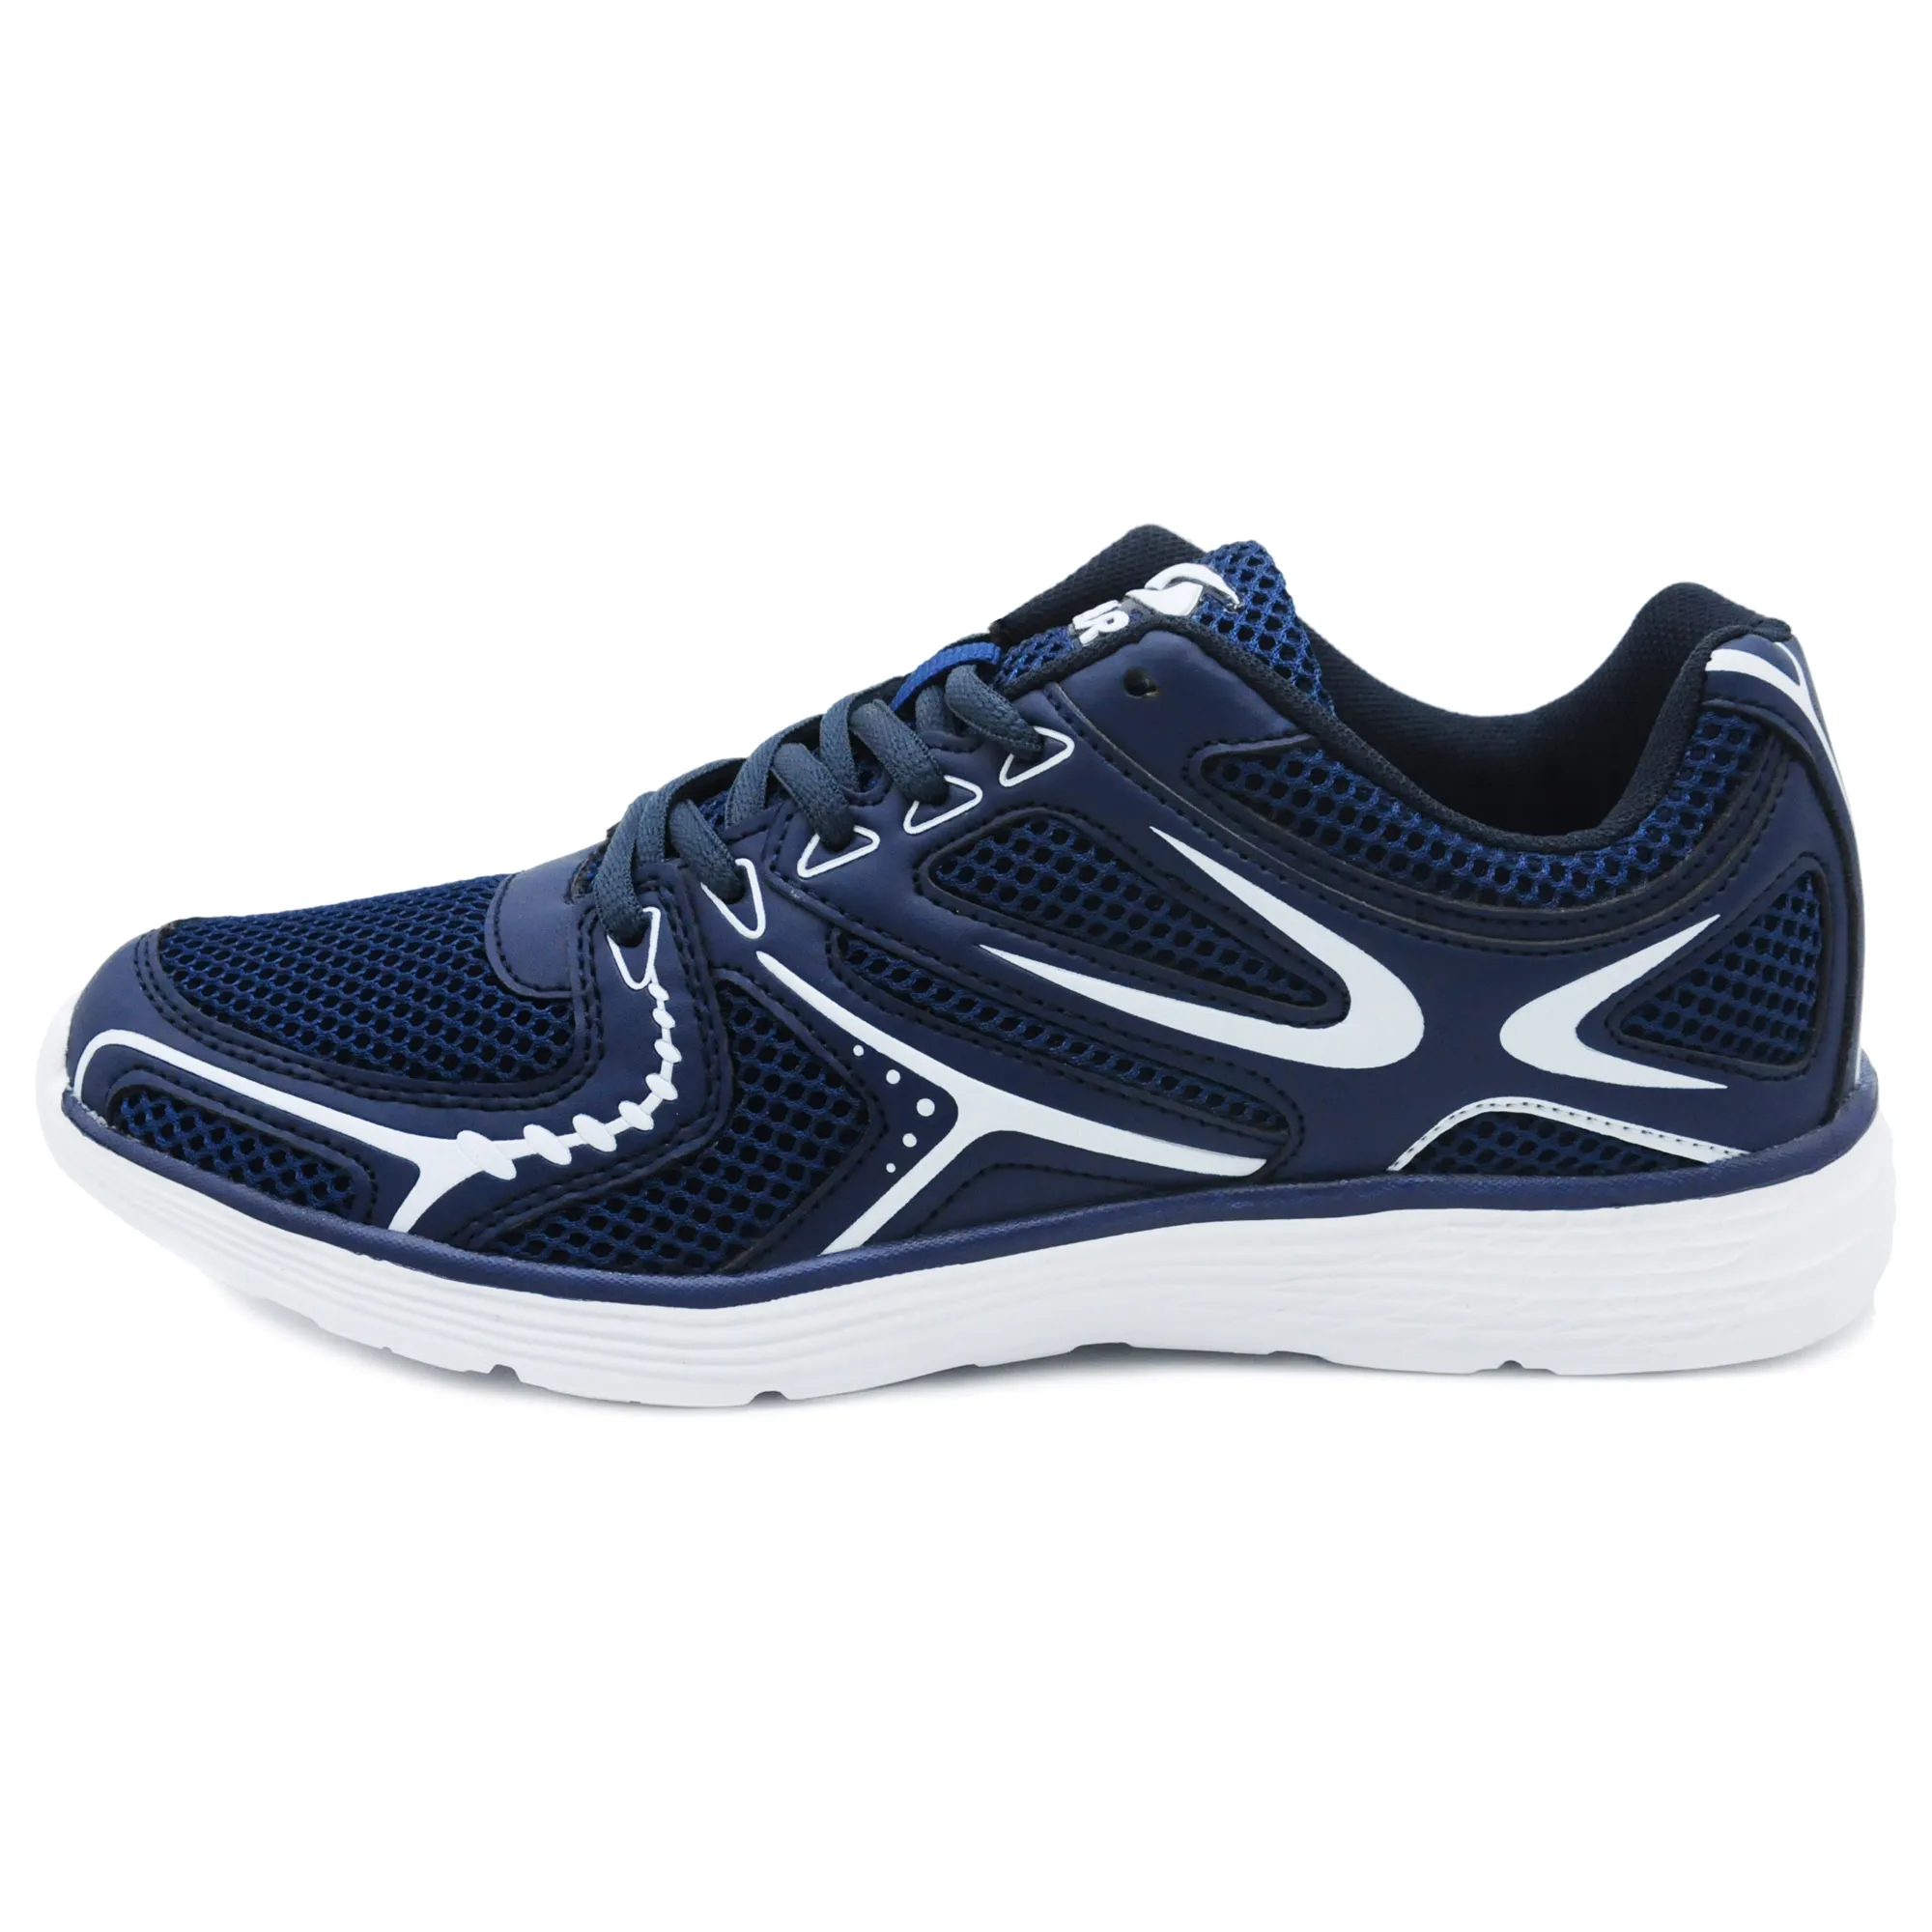 HARA Sports รองเท้าวิ่ง รองเท้าผ้าใบ ชายหญิง รุ่น J93 สีน้ำเงิน